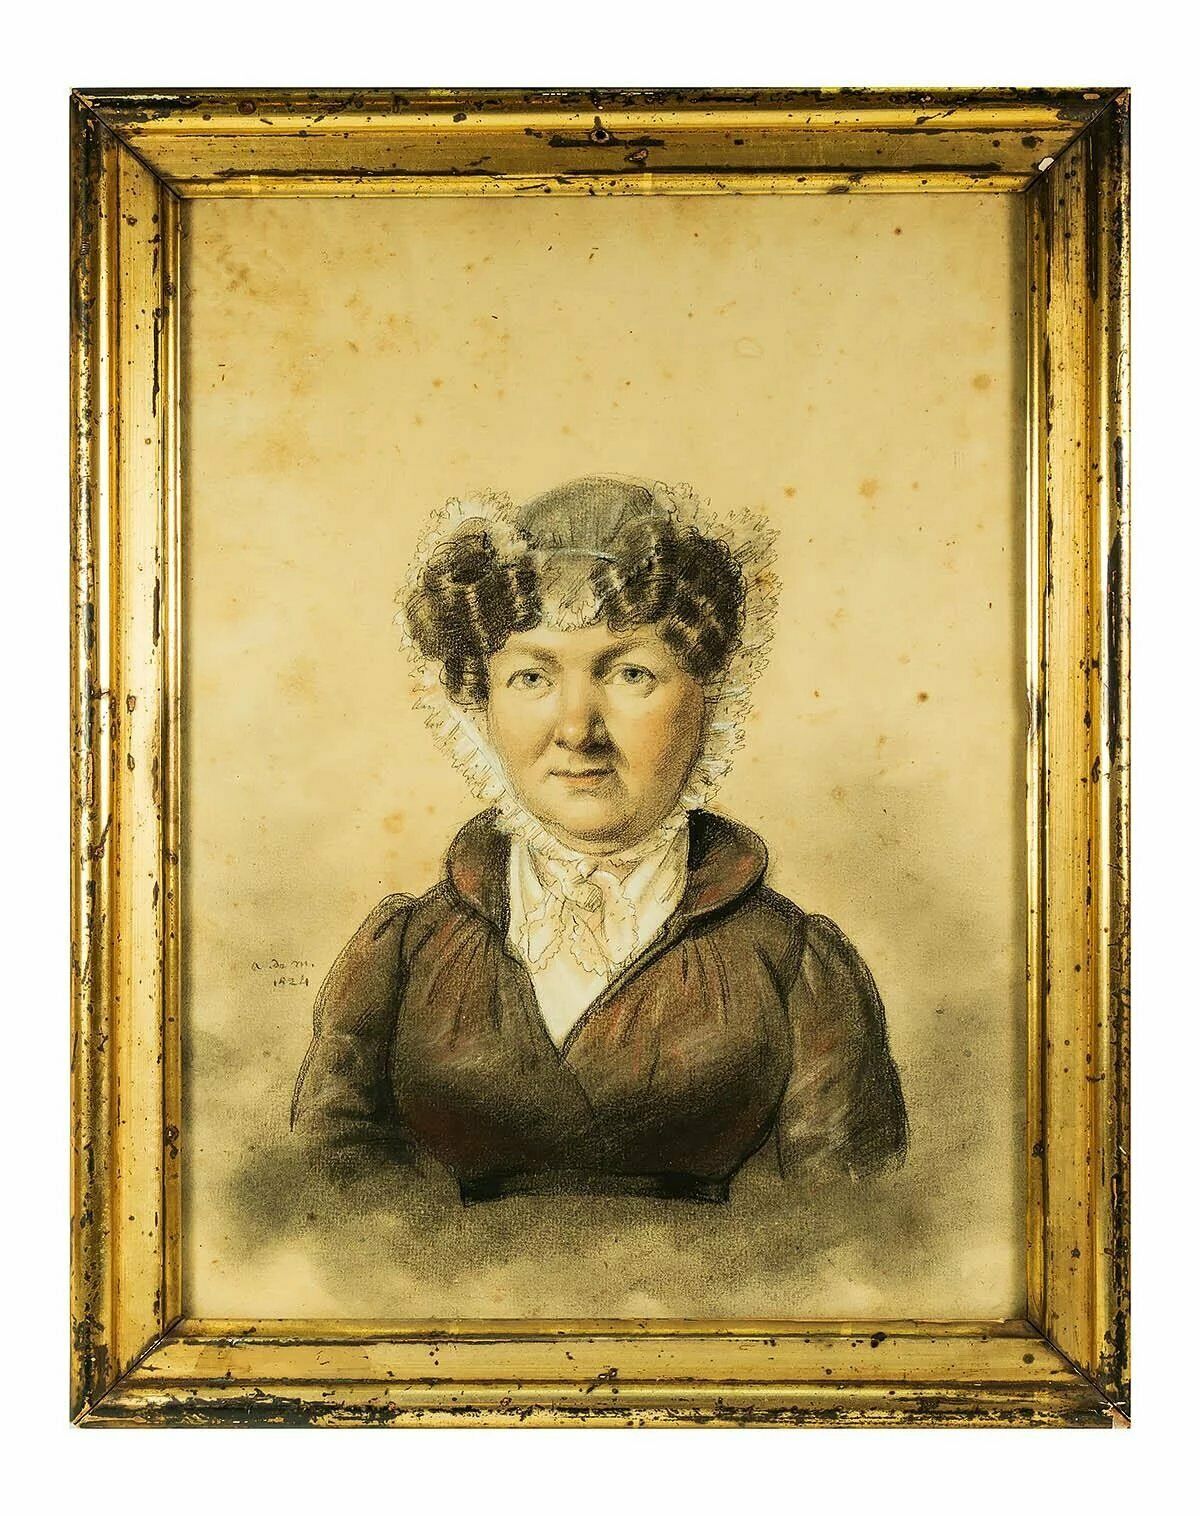 Antique Sketch & Pastel Portrait in Frame, Signed (School of Ingres) c.1824 ID'd